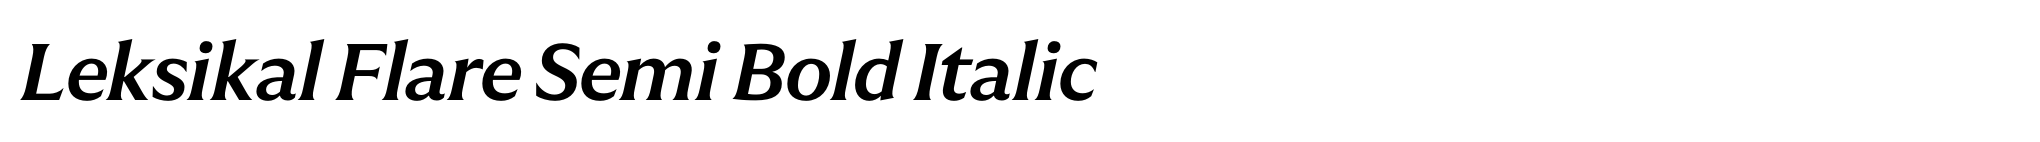 Leksikal Flare Semi Bold Italic image